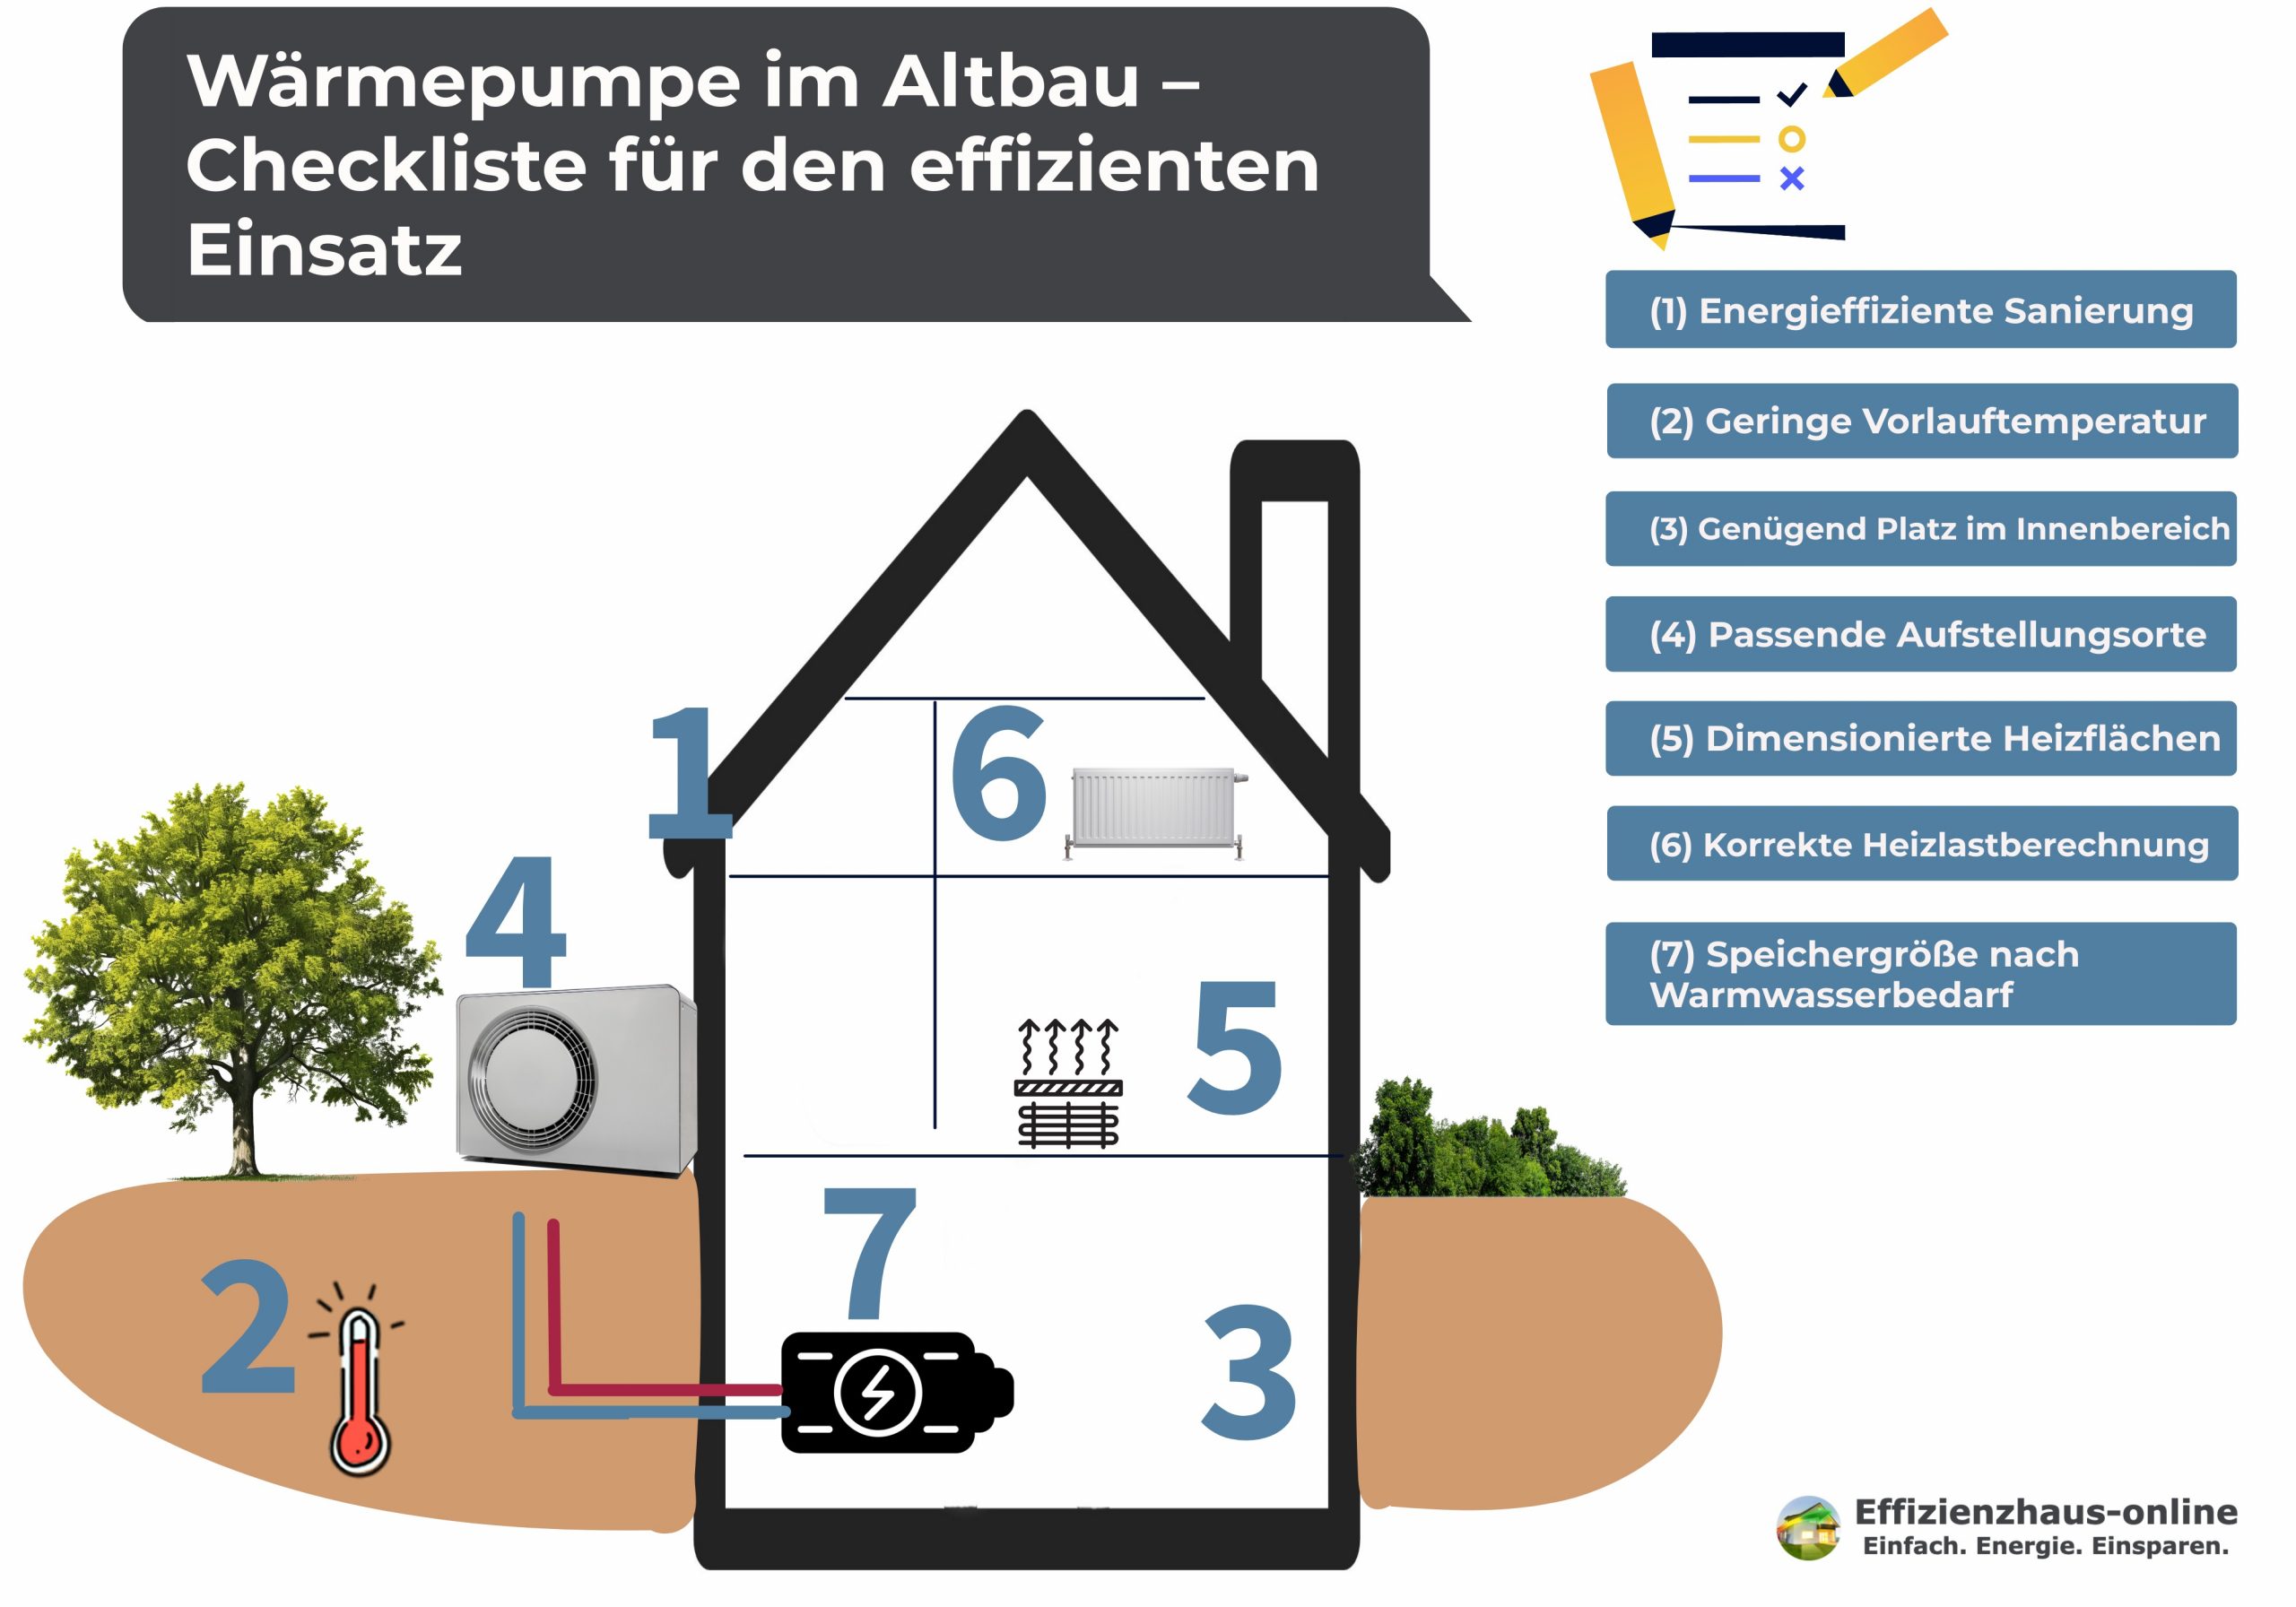 Wärmepumpe Altbau: Zu sehen ist eine grafische Darstellung eines Hauses, um die Checkliste für einen effizienten Einsatz zu verbildlichen